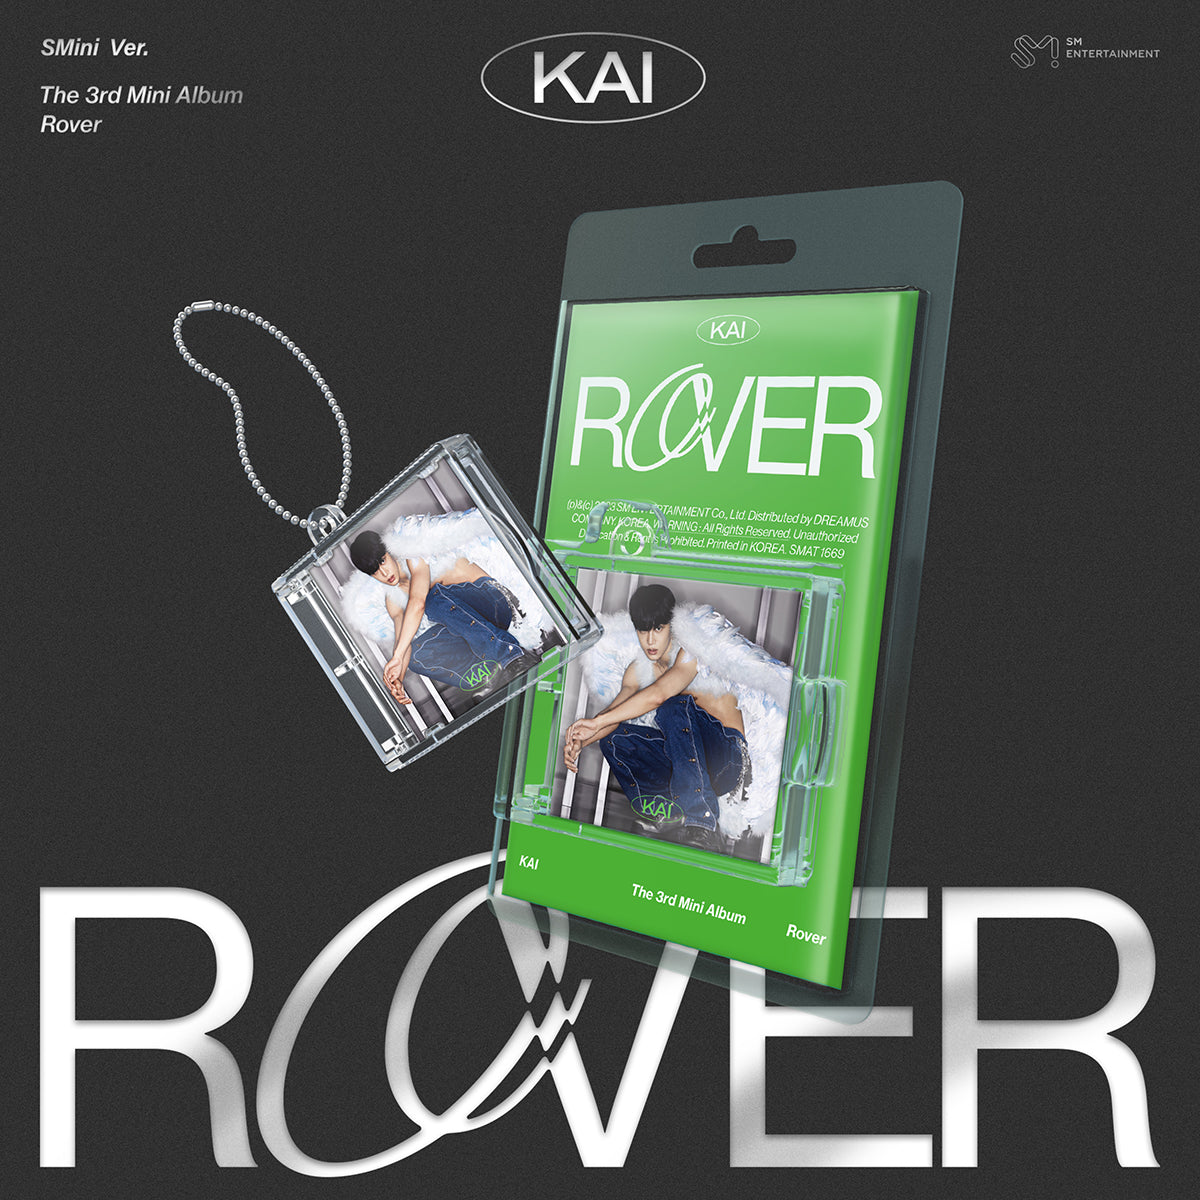 KAI (EXO) - Rover (SMini Ver.)